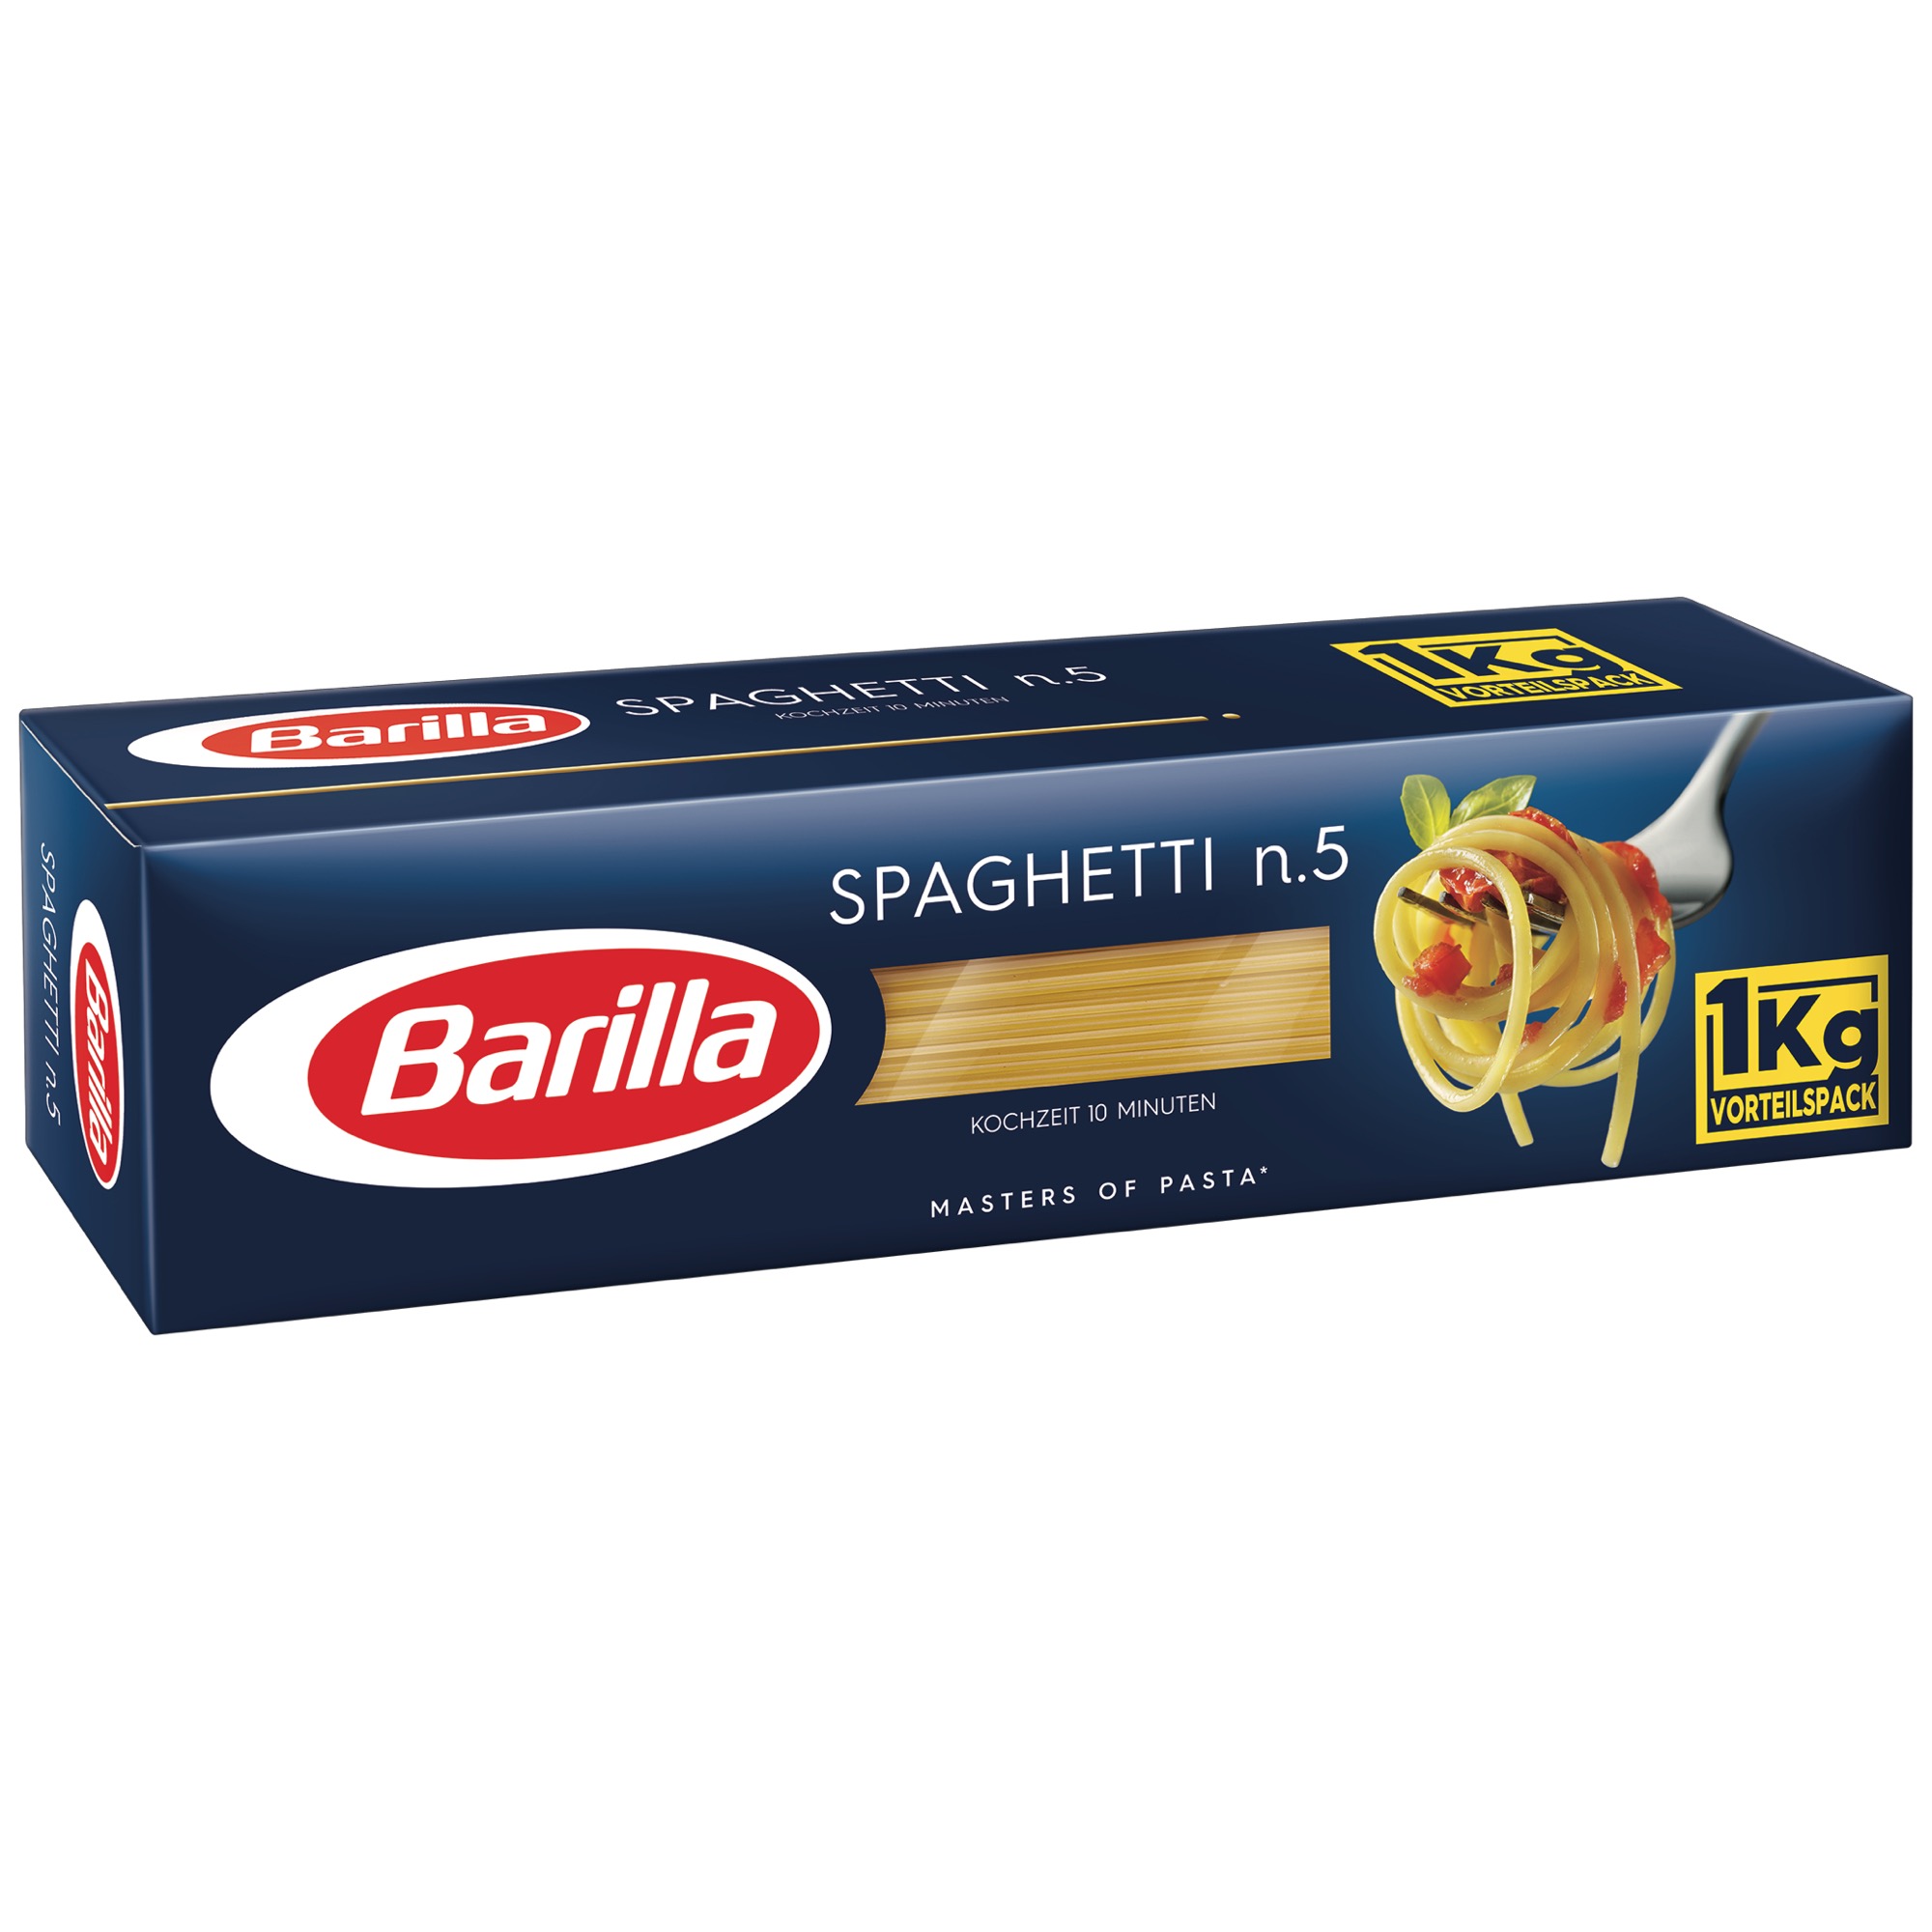 Barilla 1kg, Spaghetti Nr.5